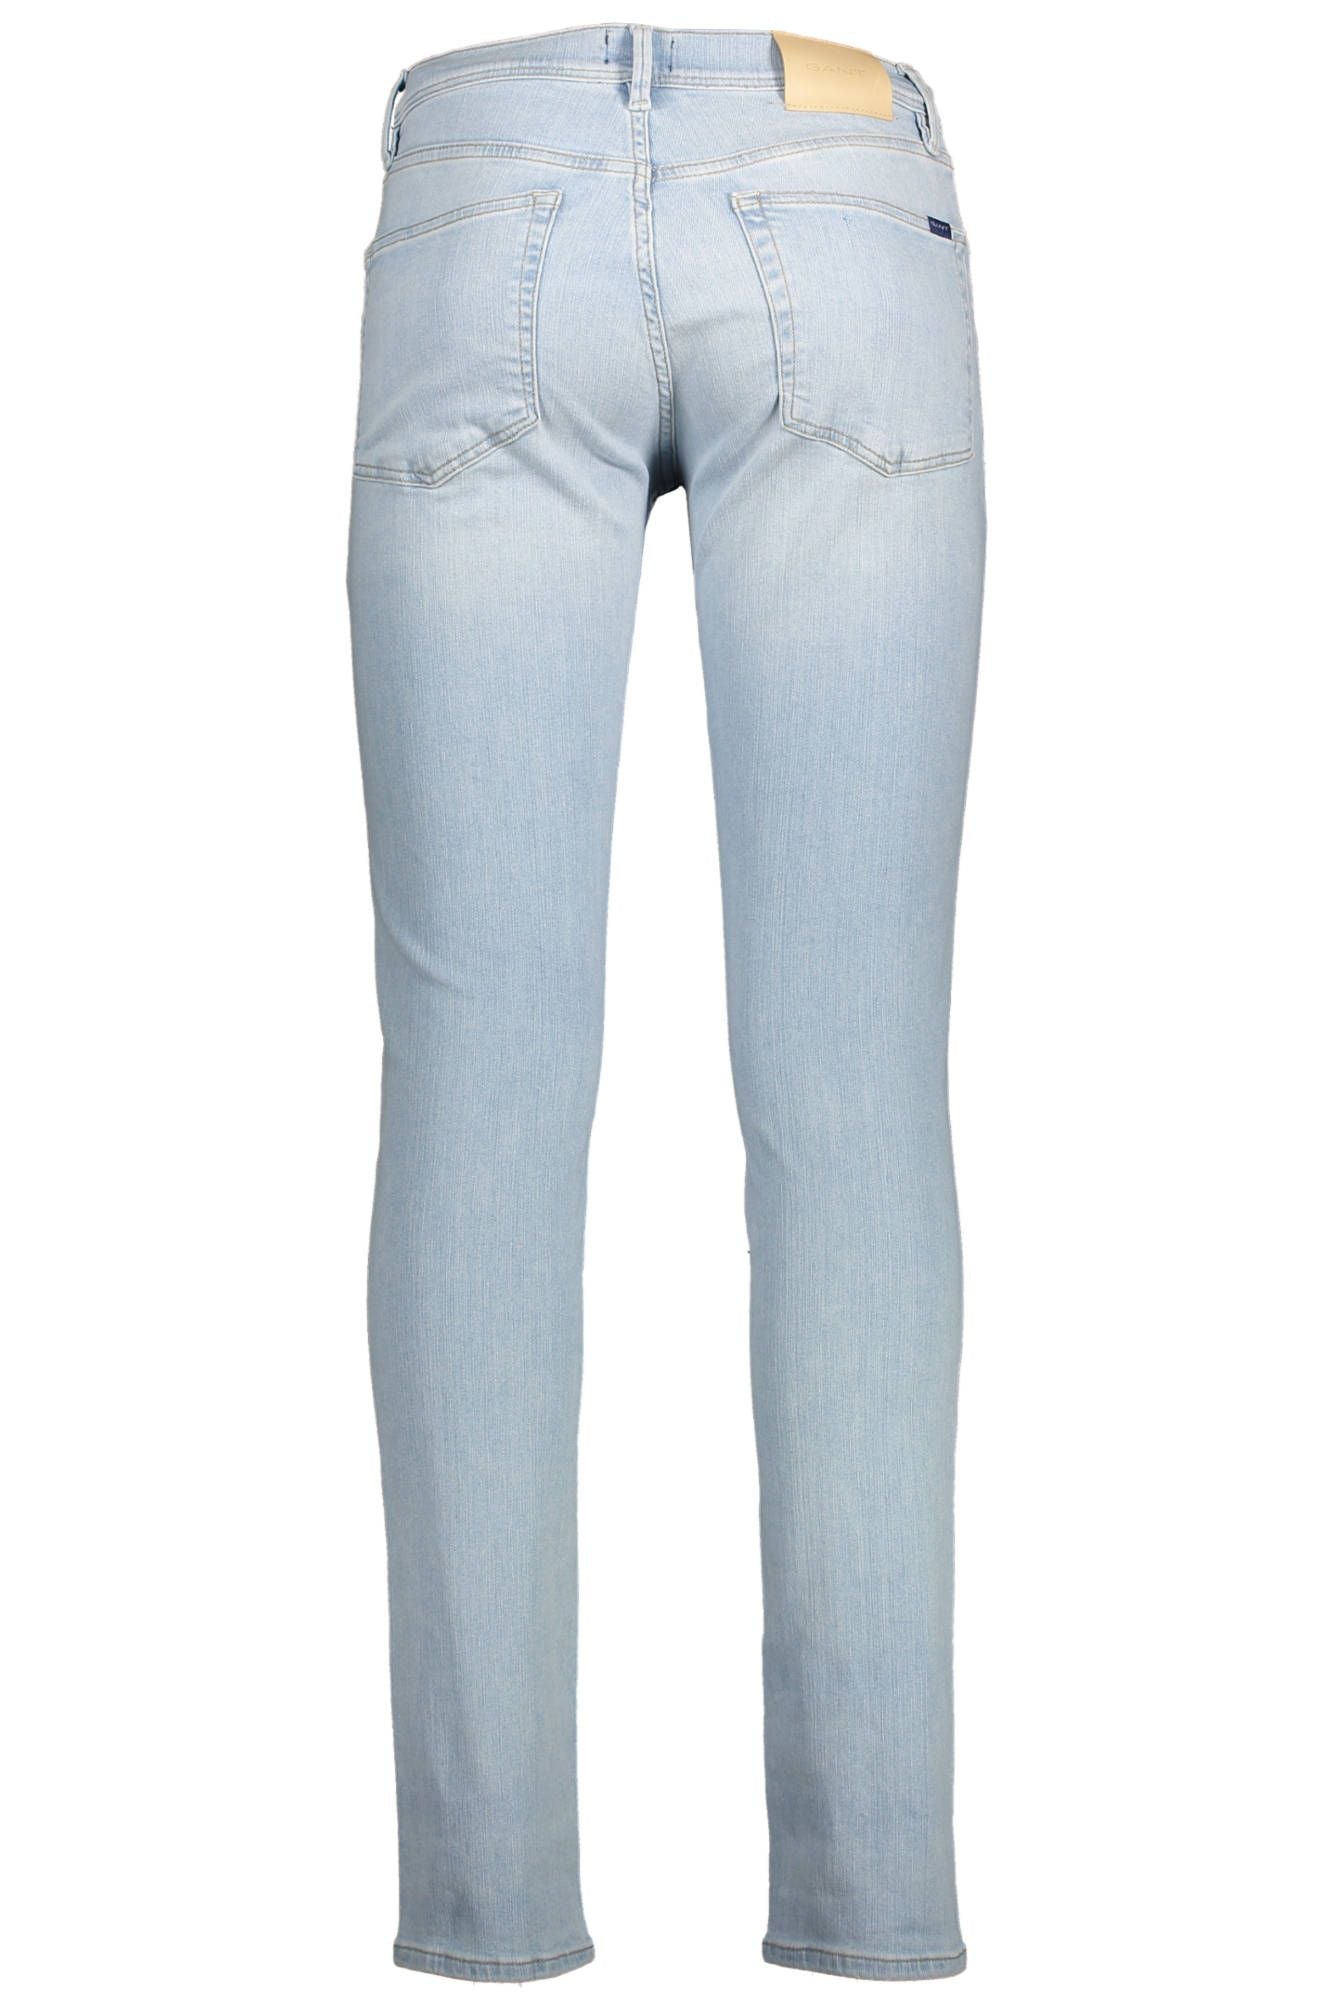 Gant Light Blue Cotton Jeans & Pant